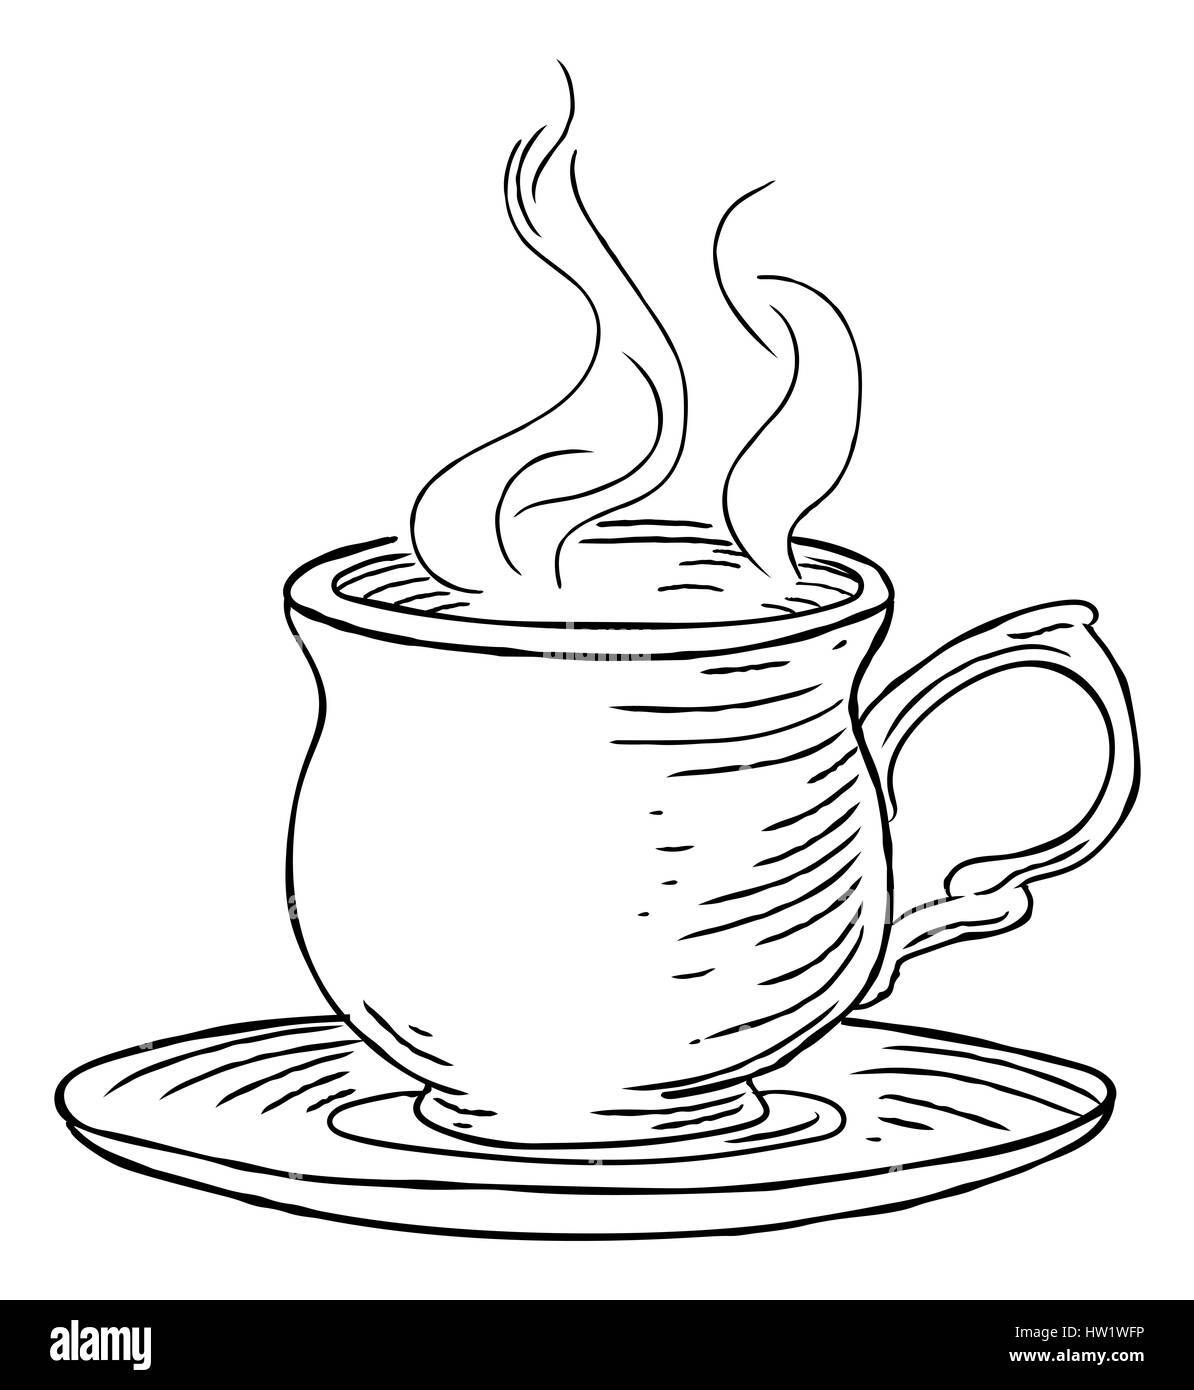 Una humeante taza de té o café y plato dibujar a mano en un retro vintage  grabados en xilografía o grabado estilo Fotografía de stock - Alamy